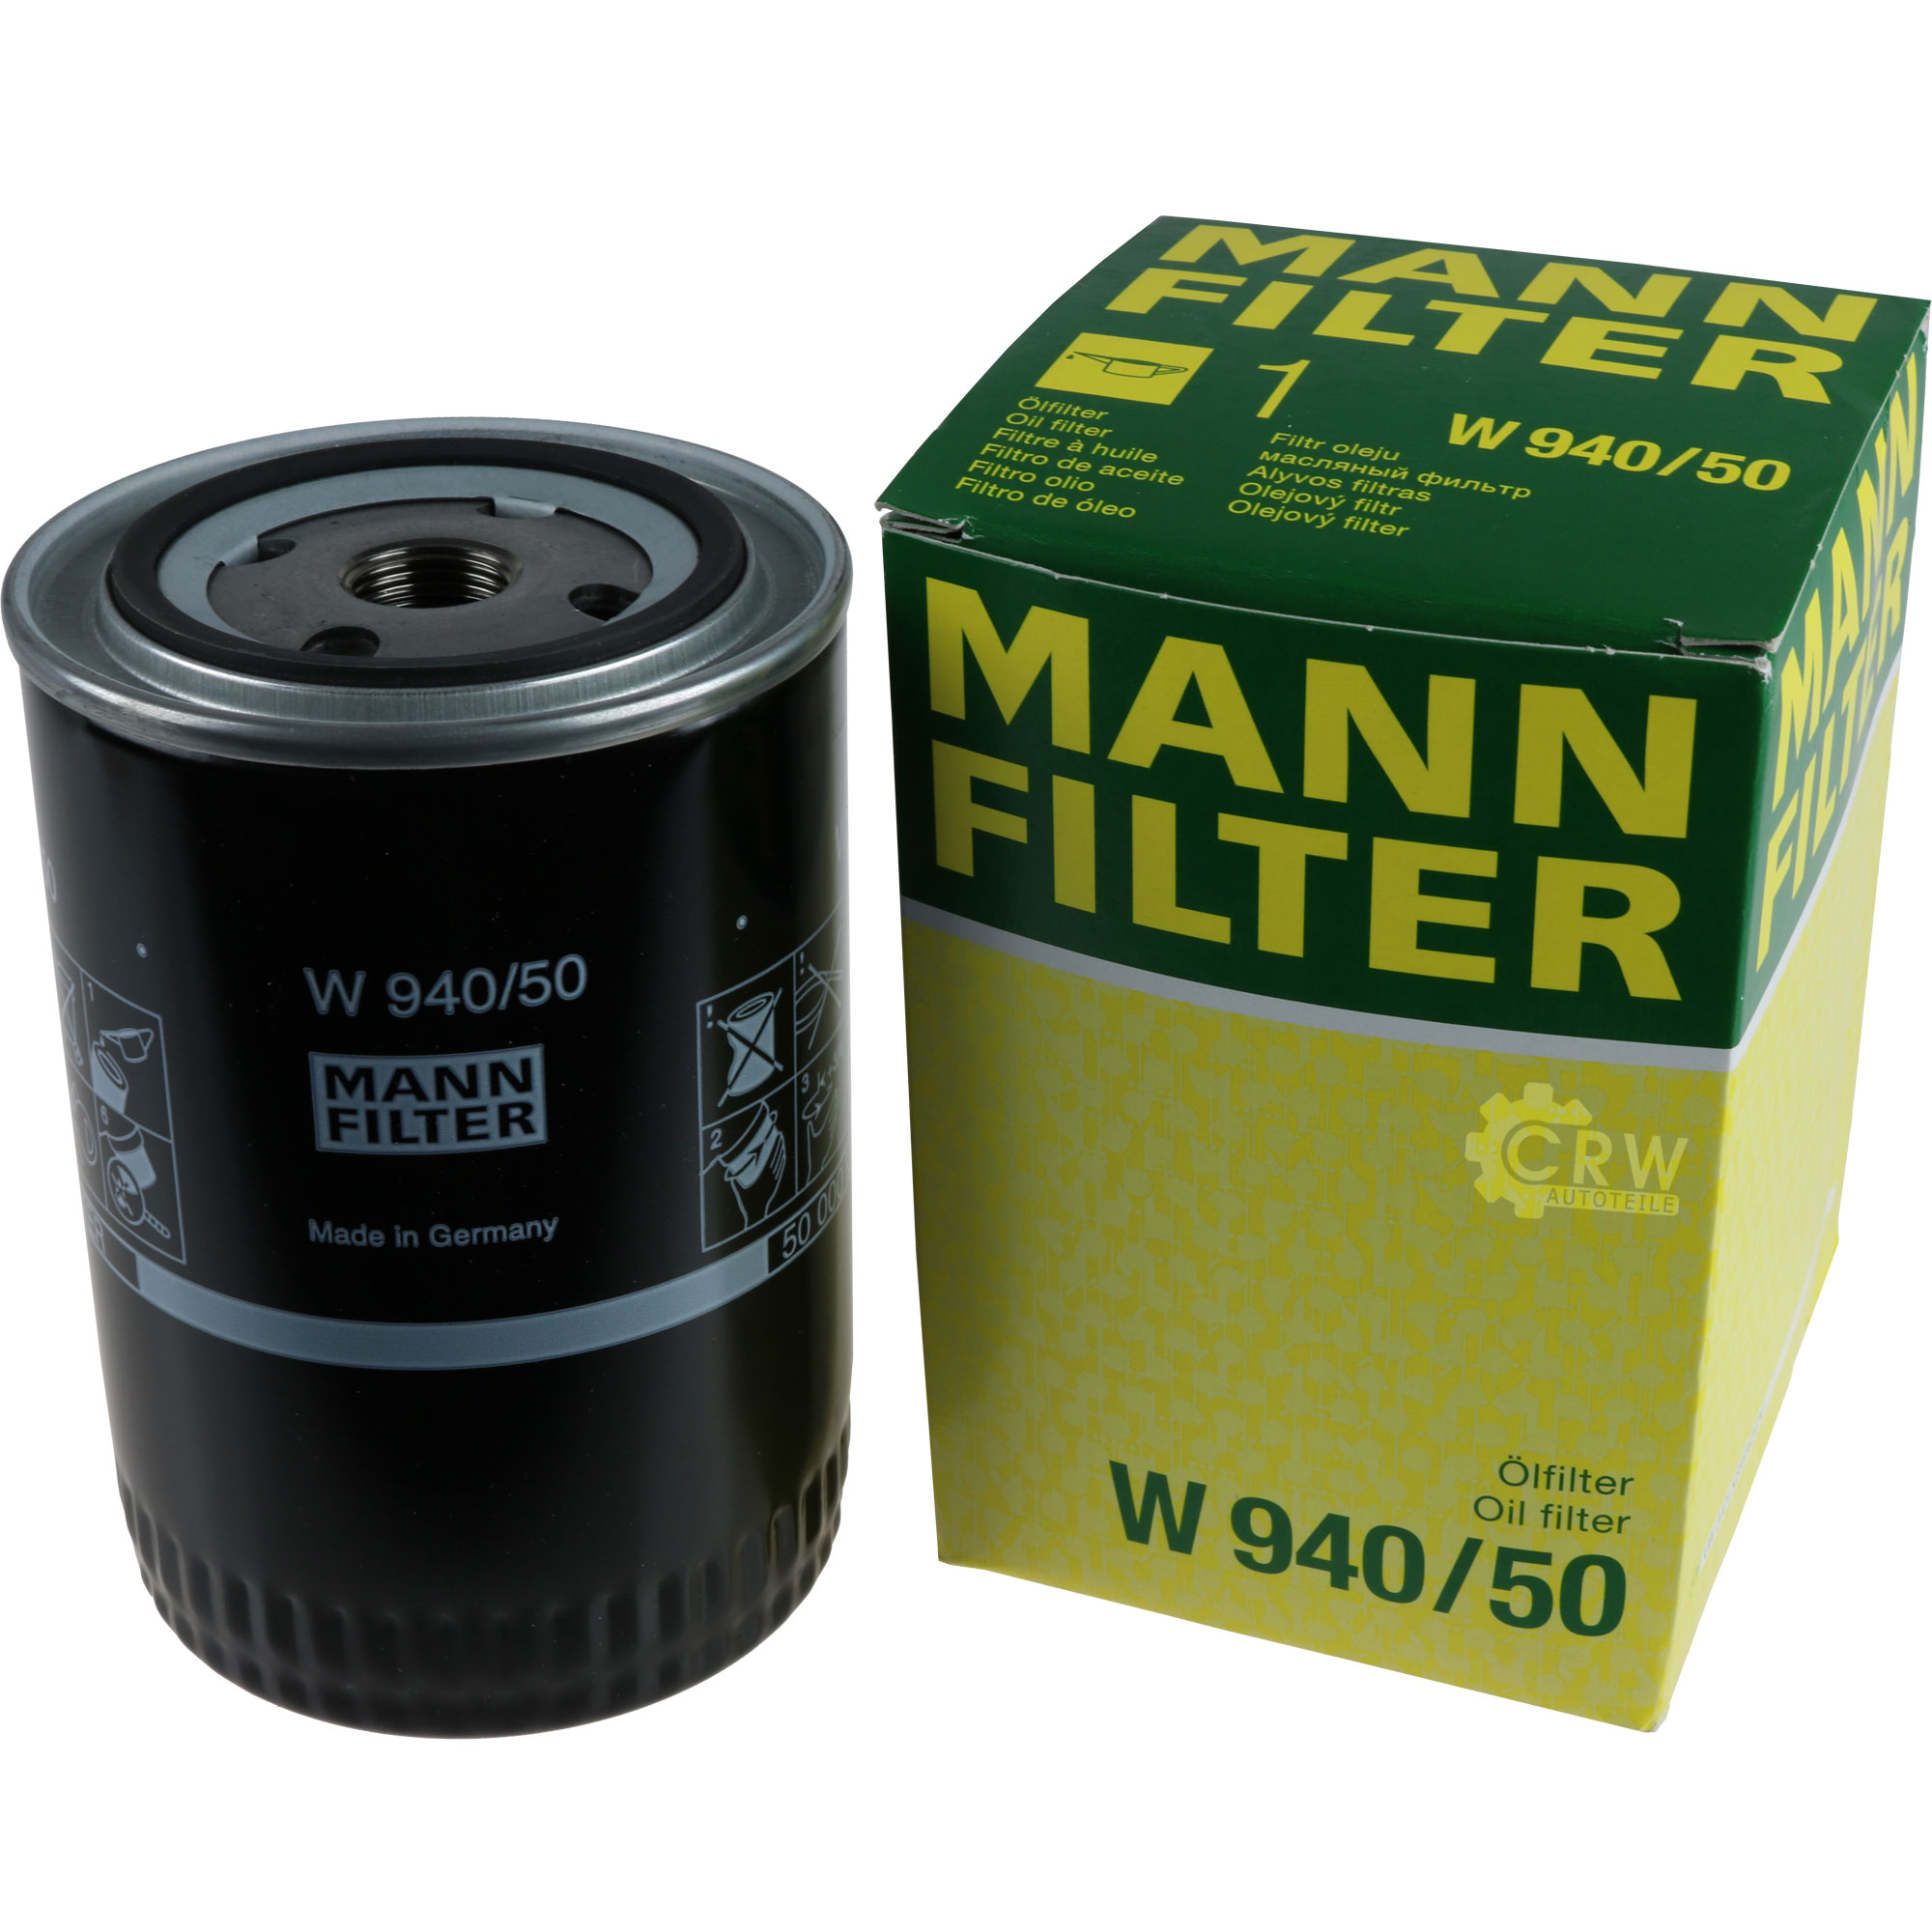 MANN-FILTER Ölfilter W 940/50 Oil Filter